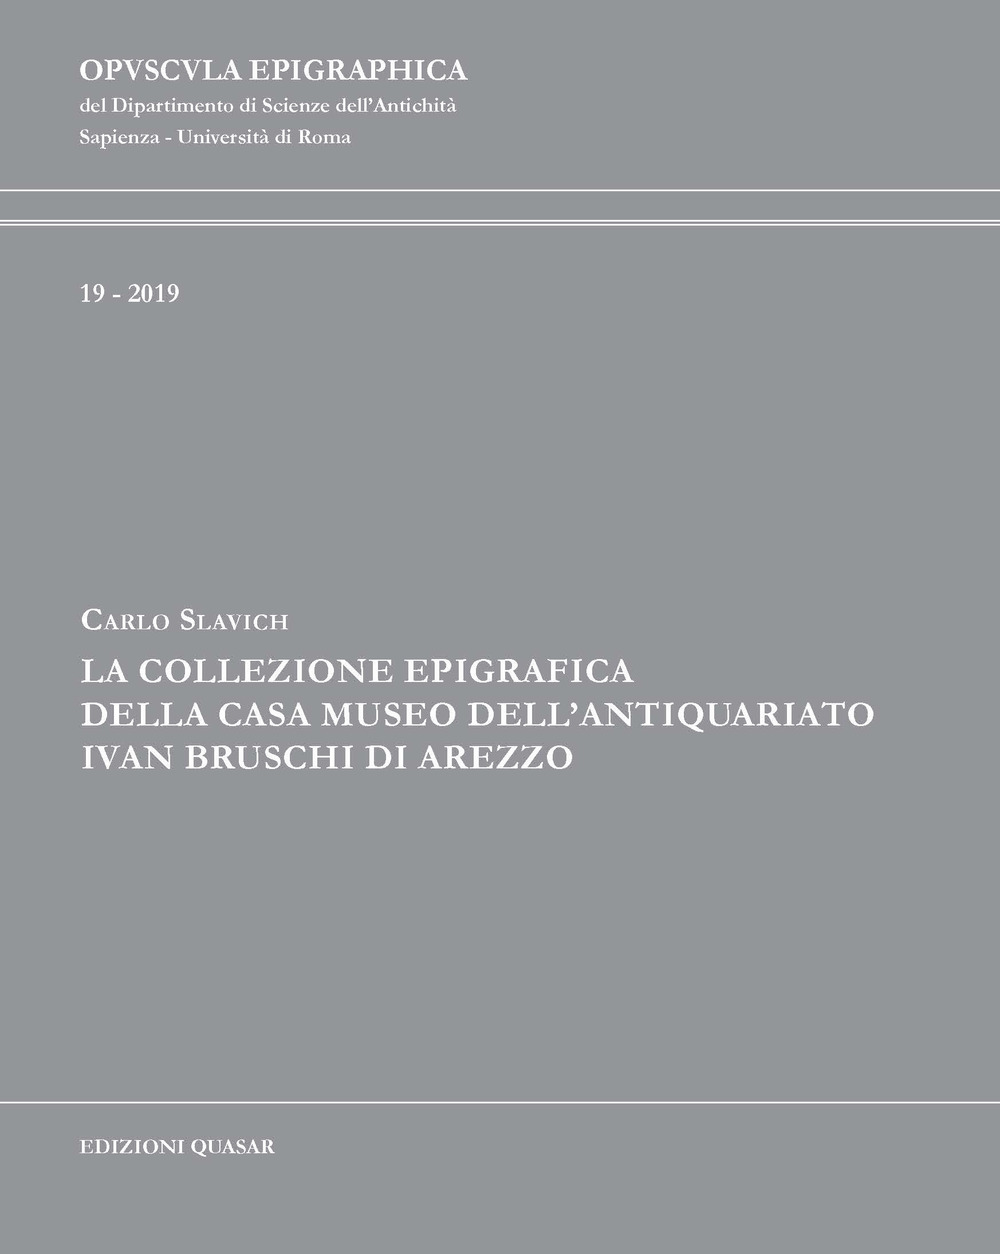 La collezione epigrafica della Casa Museo dell'Antiquariato Ivan Bruschi di Arezzo